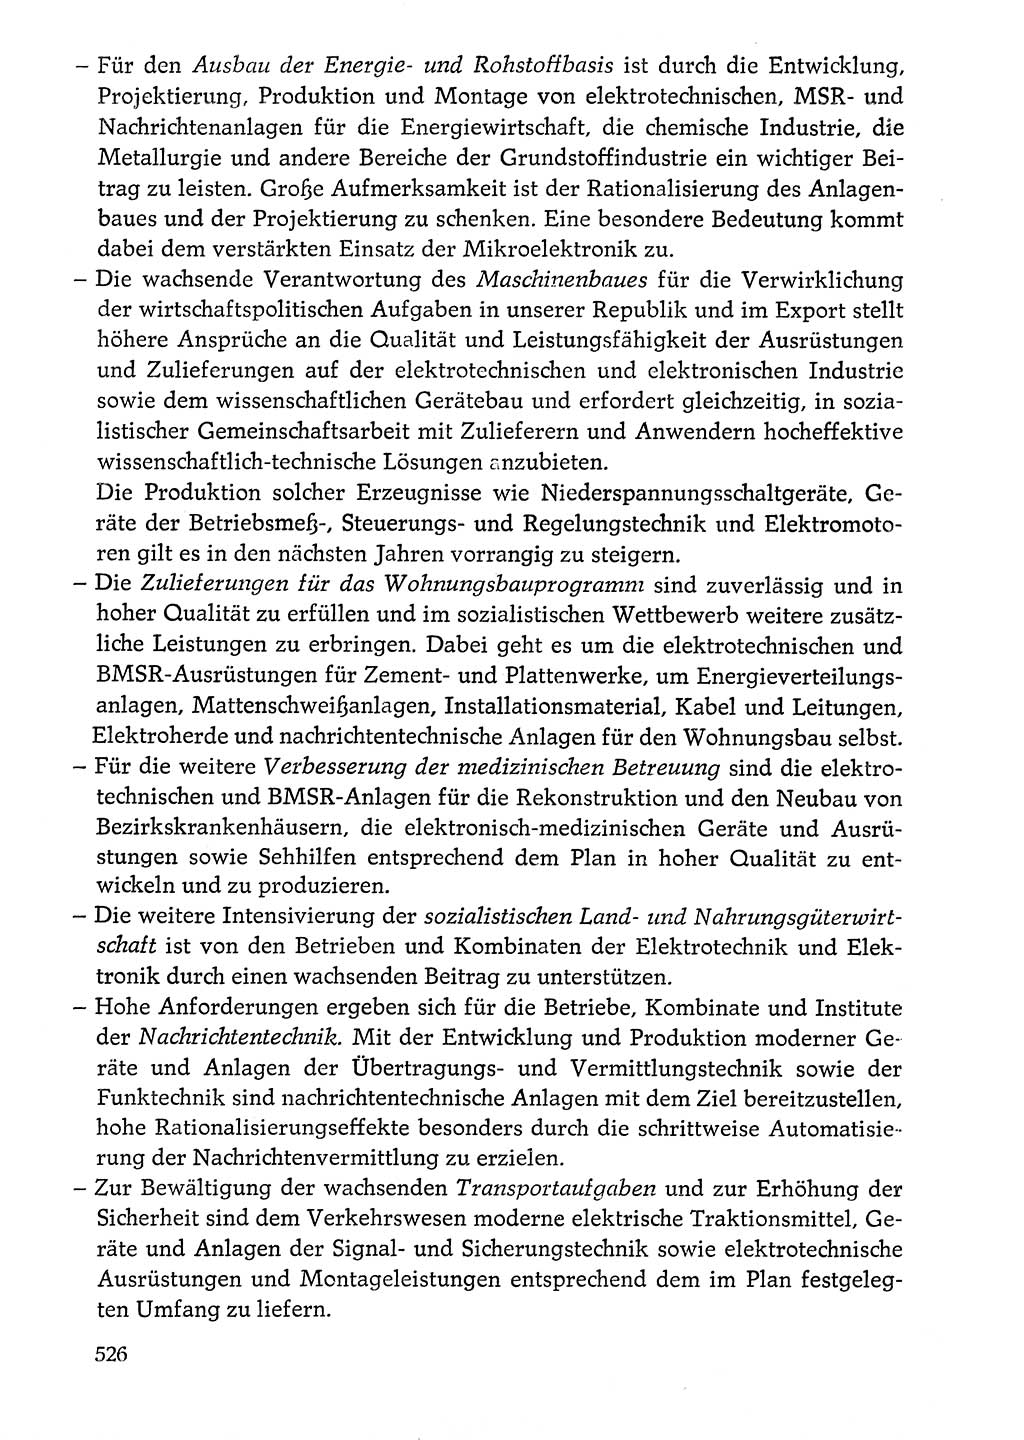 Dokumente der Sozialistischen Einheitspartei Deutschlands (SED) [Deutsche Demokratische Republik (DDR)] 1976-1977, Seite 526 (Dok. SED DDR 1976-1977, S. 526)